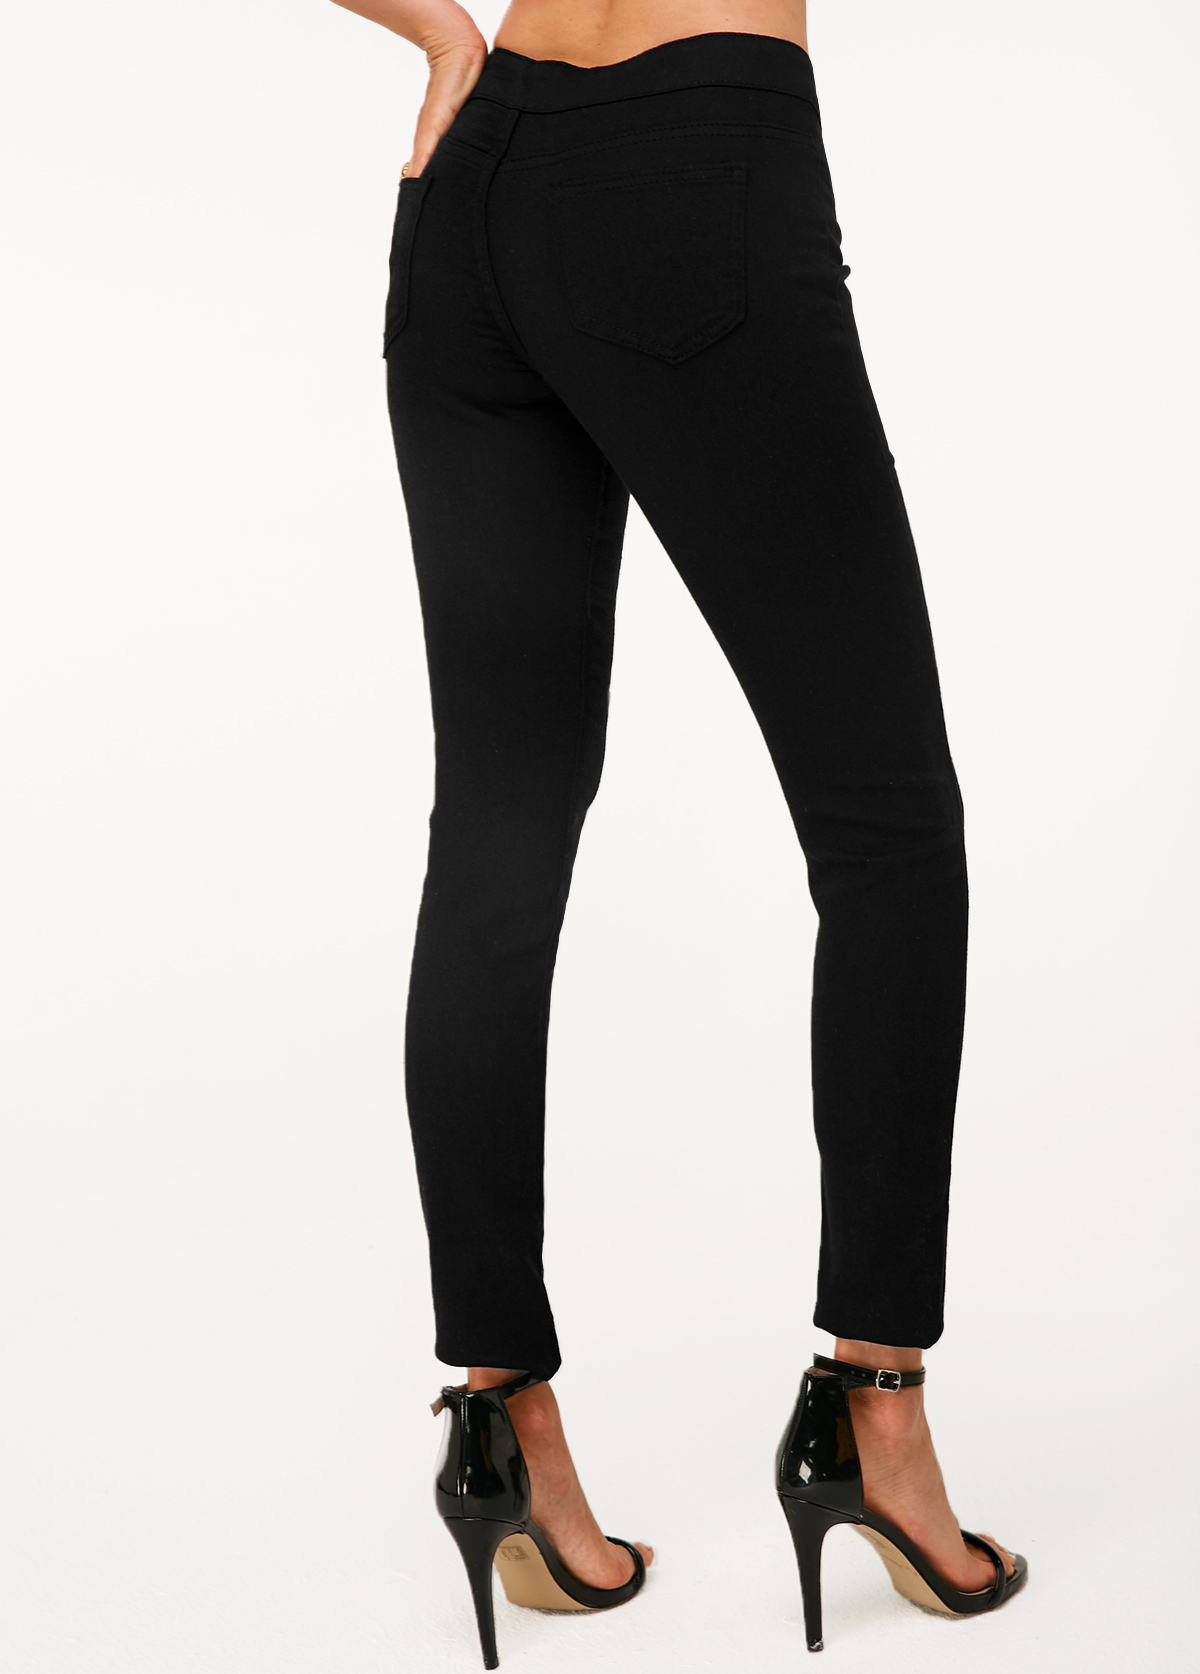 Shredded Black High Waist Skinny Jeans | modlily.com - USD 9.99